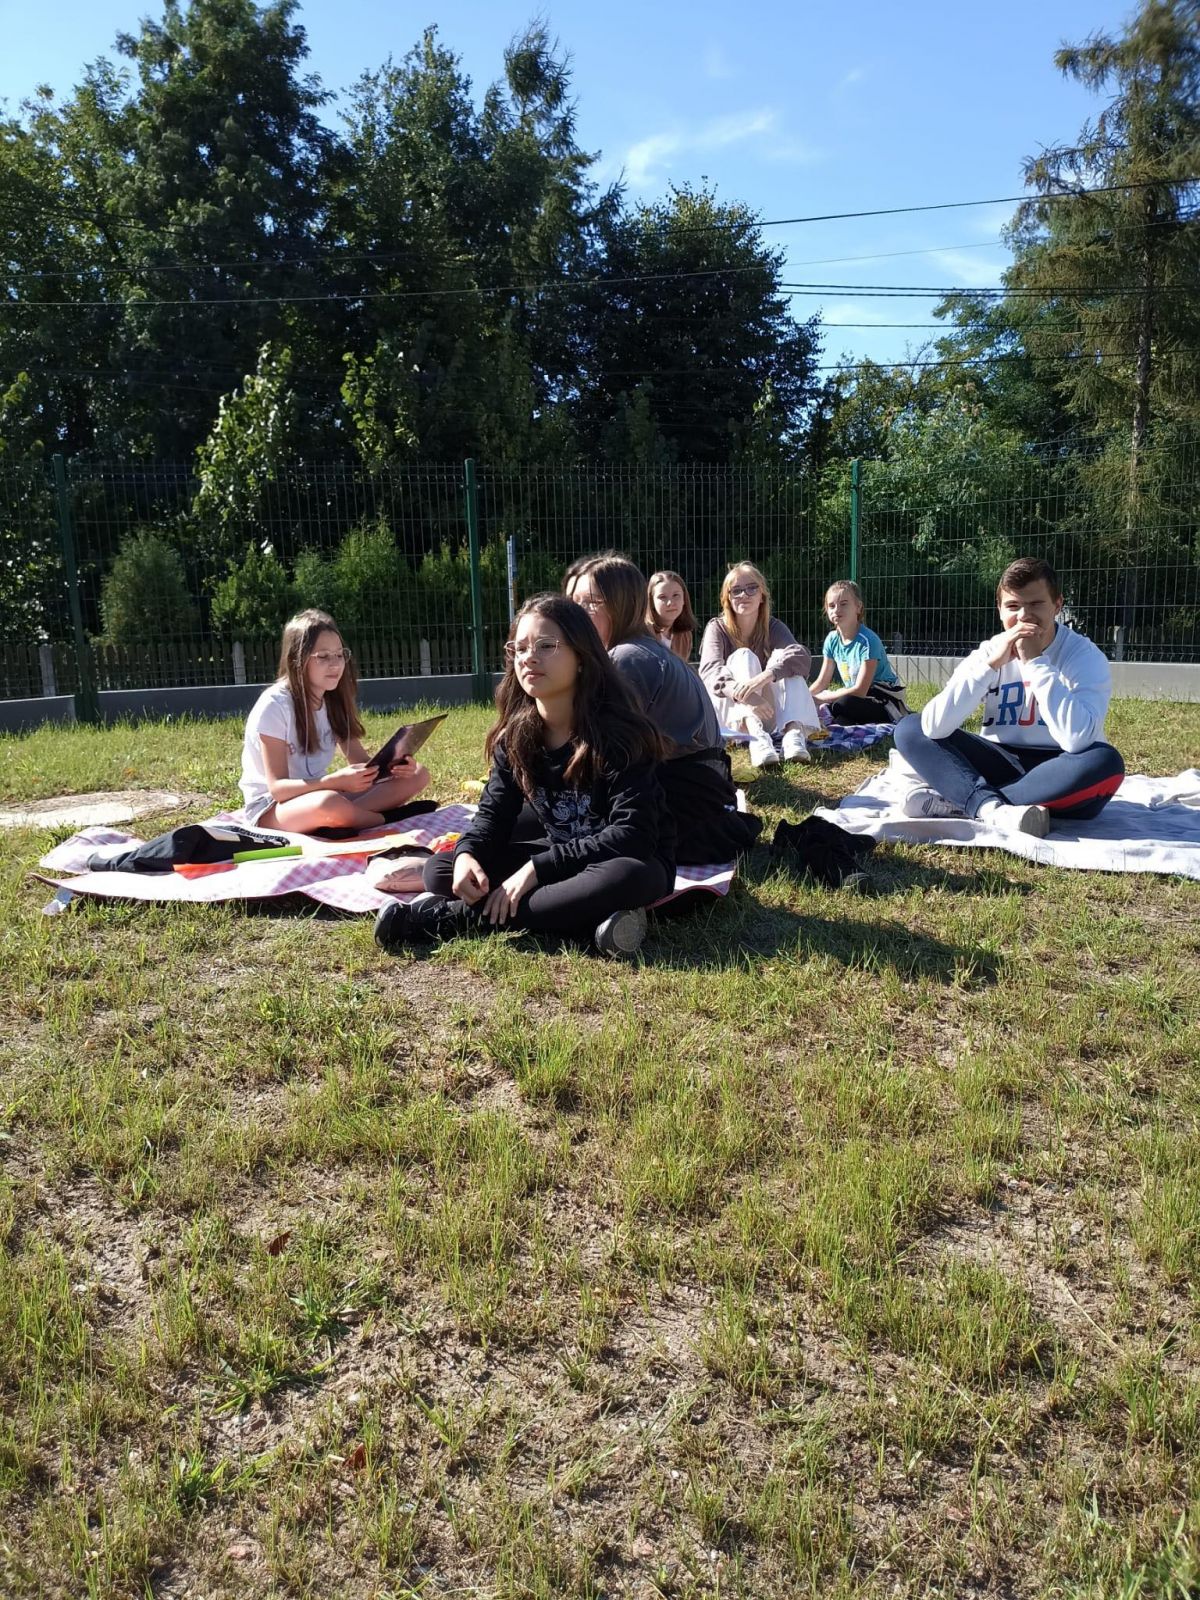 Uczniowie siedzący przed szkołą na kocach 